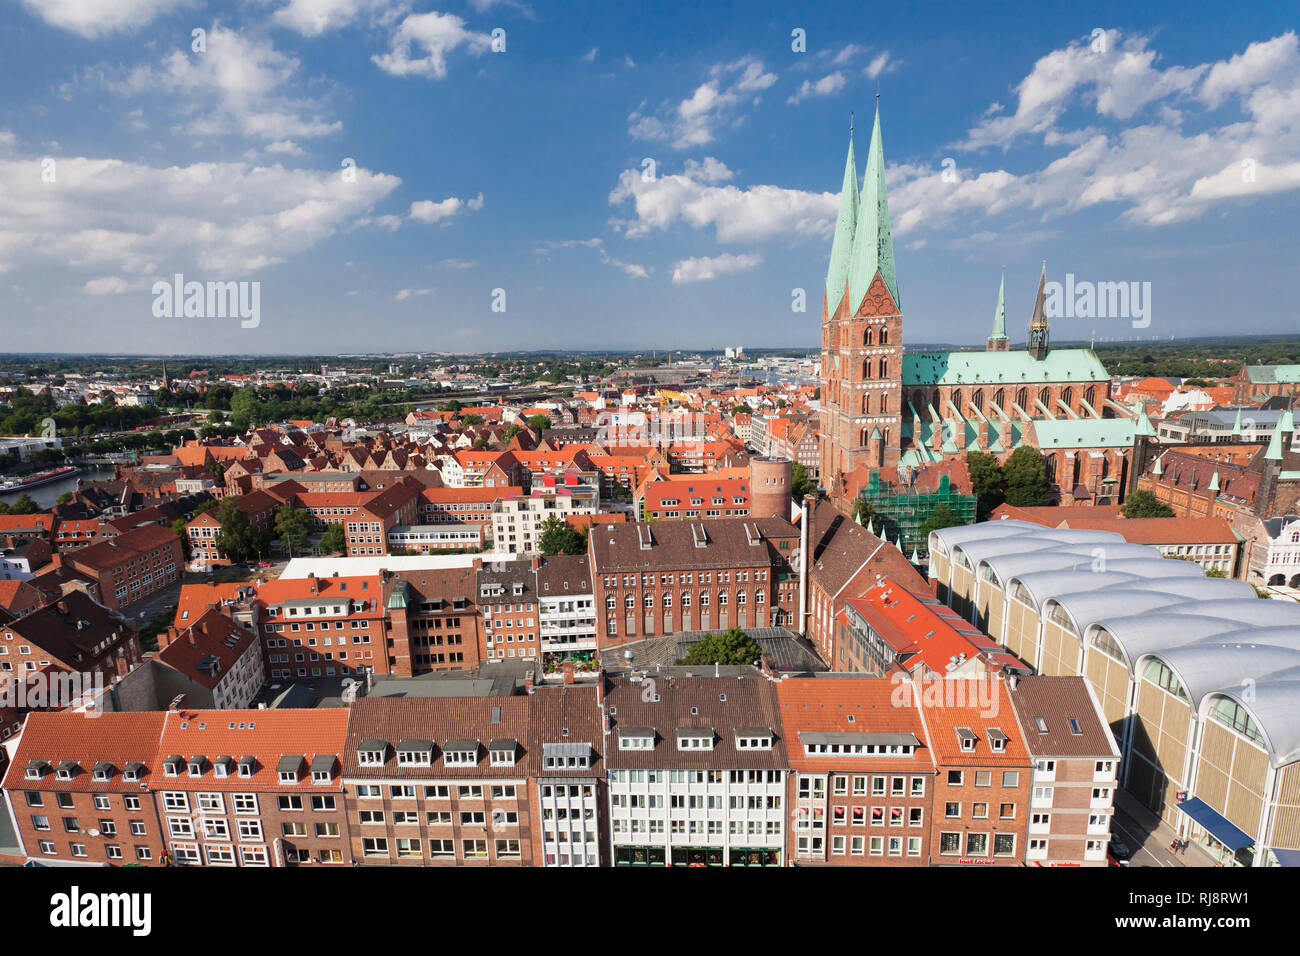 Blick über die Altstadt mit Marienkirche und Rathaus, Lubecca, Schleswig Holstein, Deutschland Foto Stock